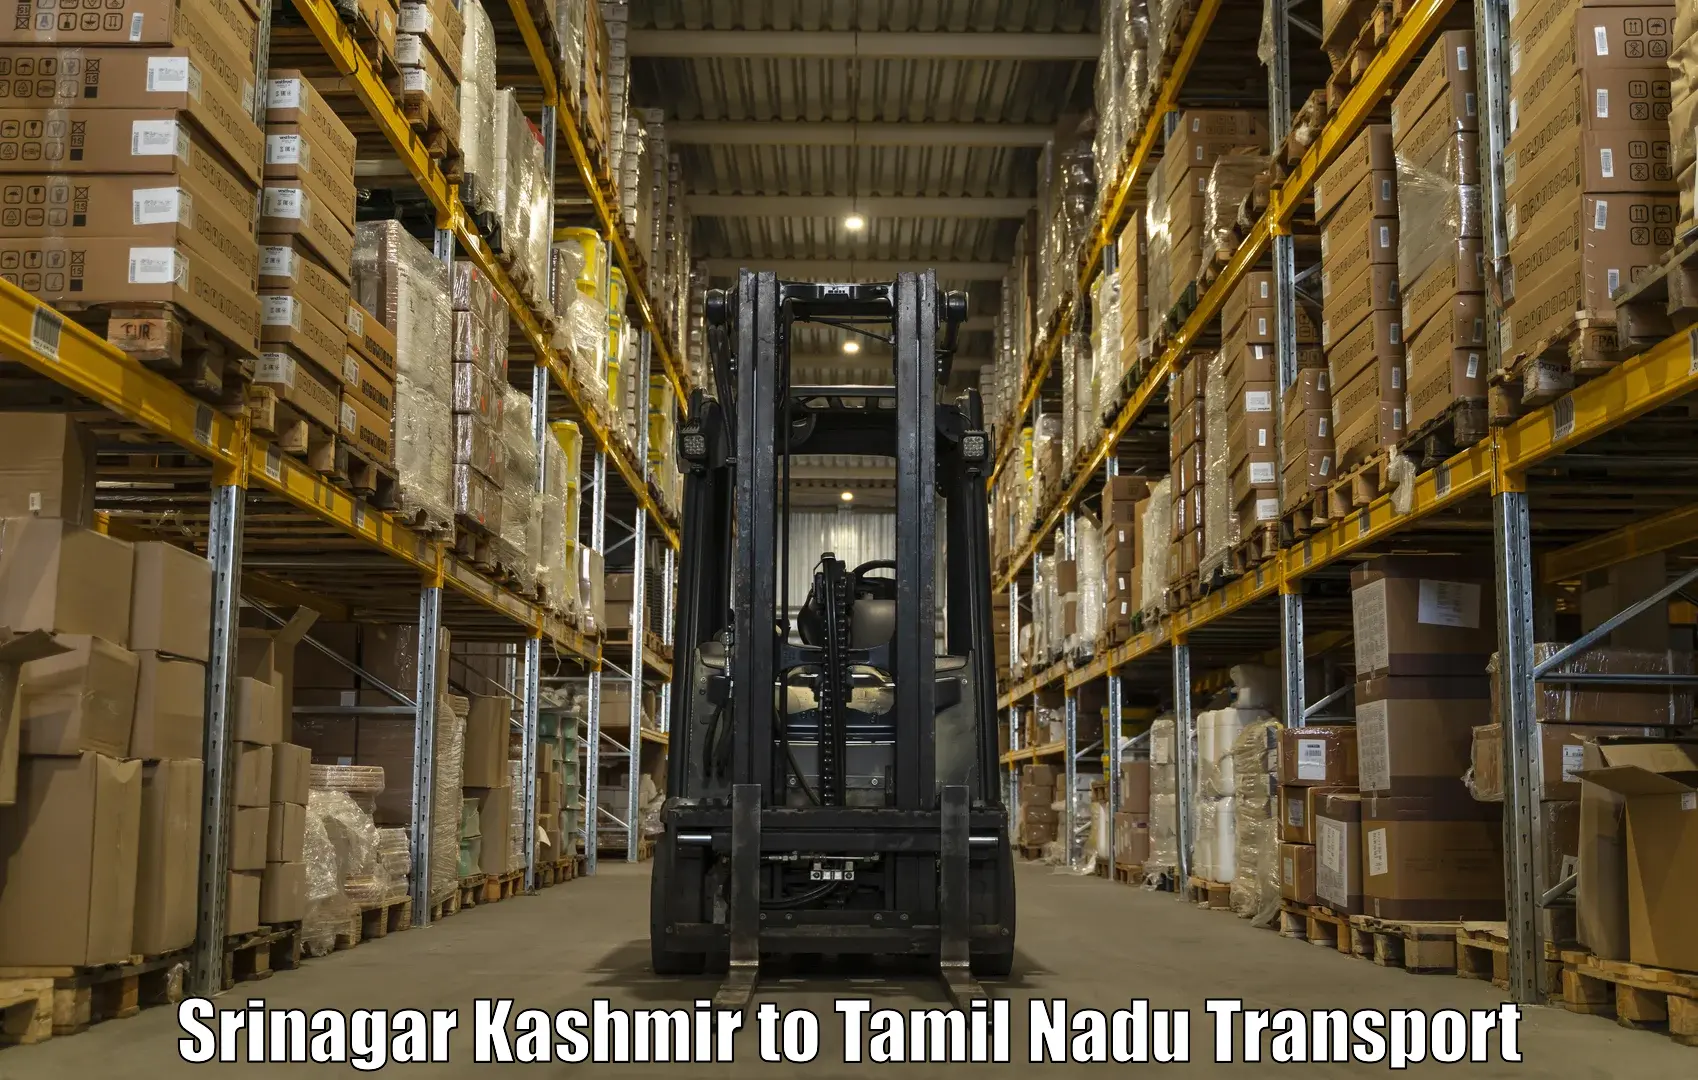 Goods delivery service Srinagar Kashmir to Pudukkottai